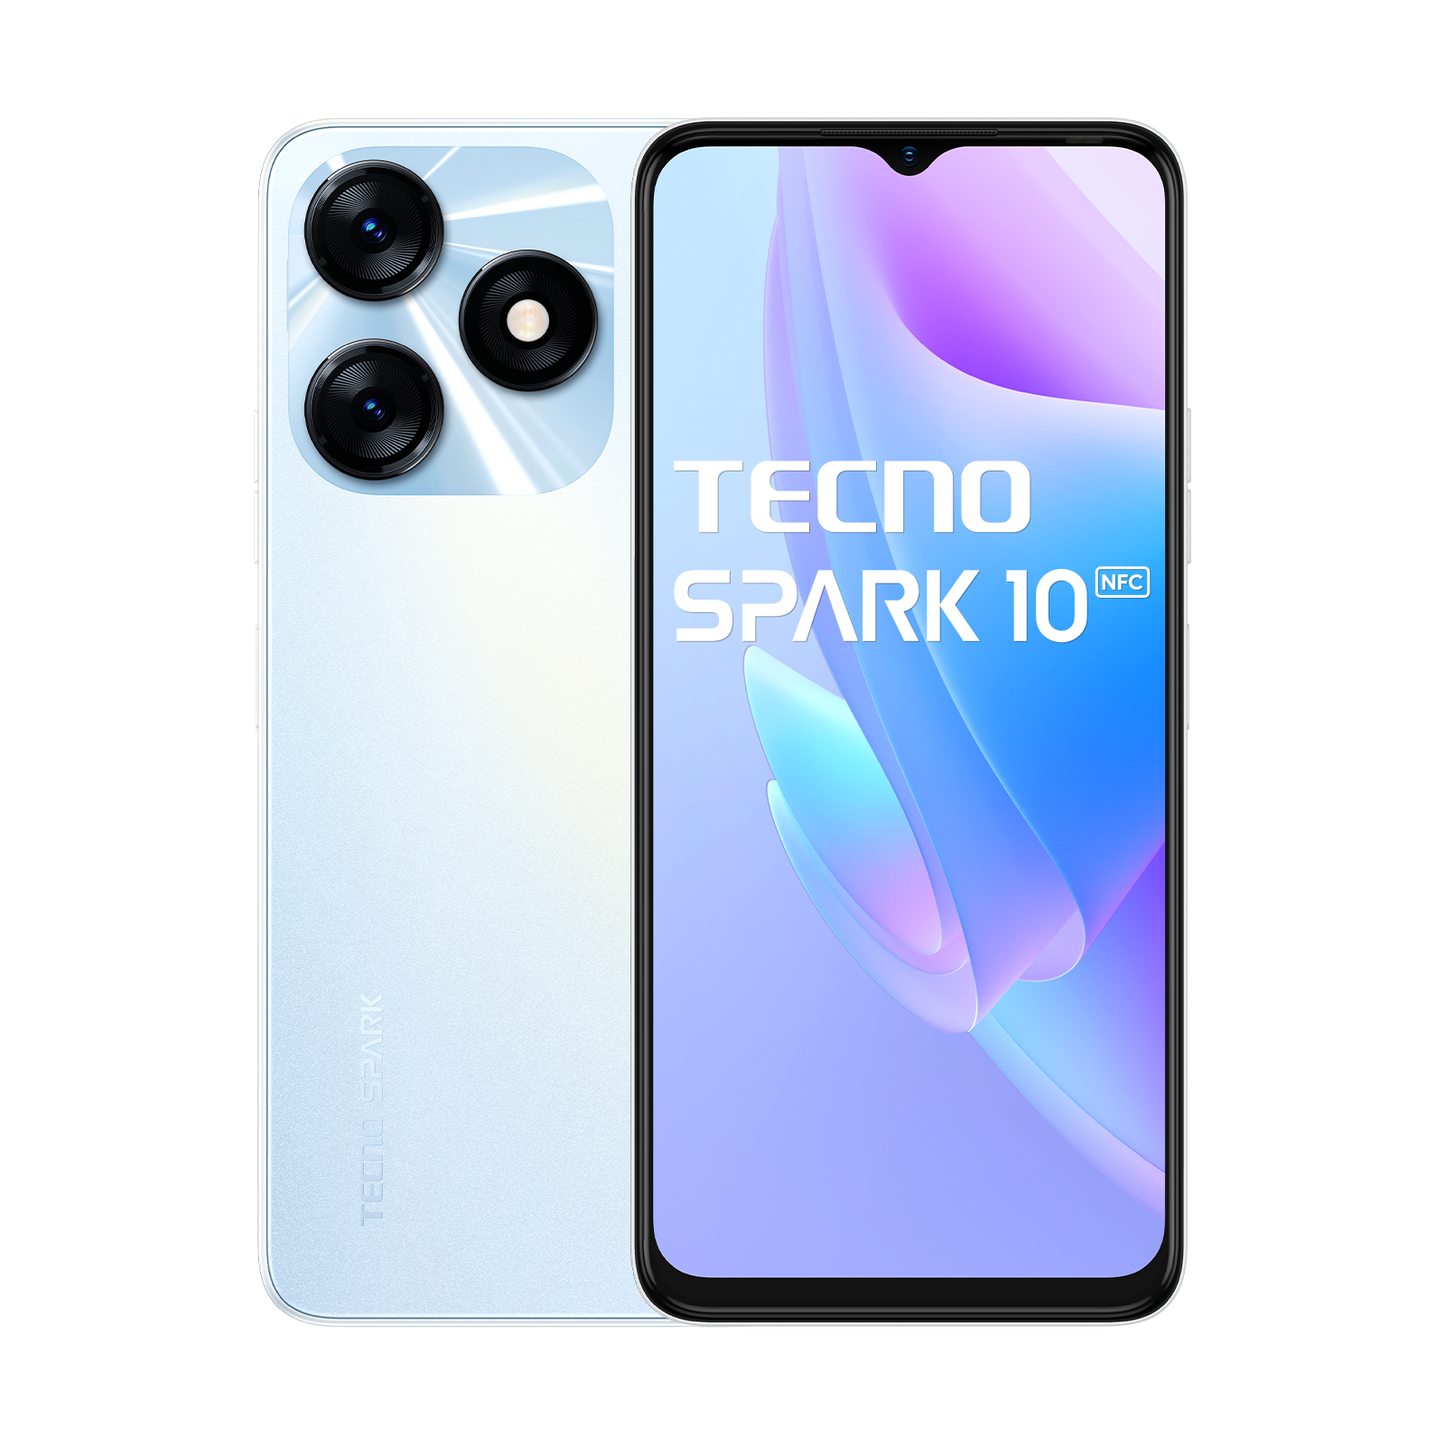 TECNO SPARK 10 NFC od TECNO w SimplyBuy.pl